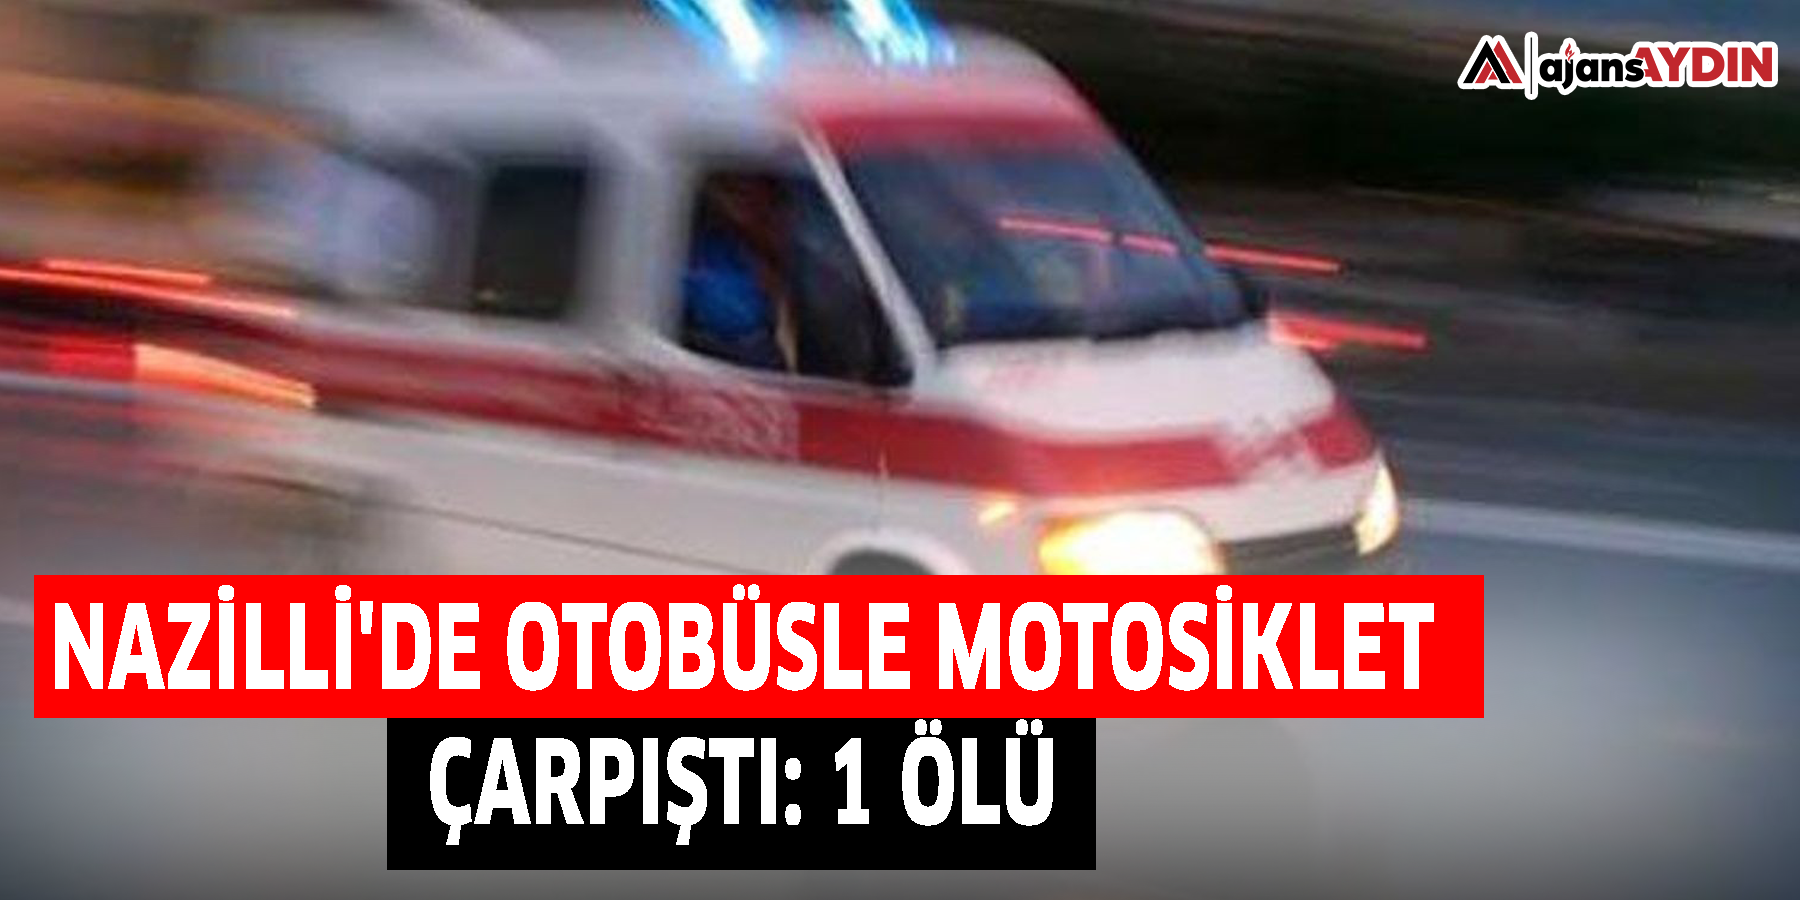 Nazilli'de otobüsle motosiklet çarpıştı: 1 ölü